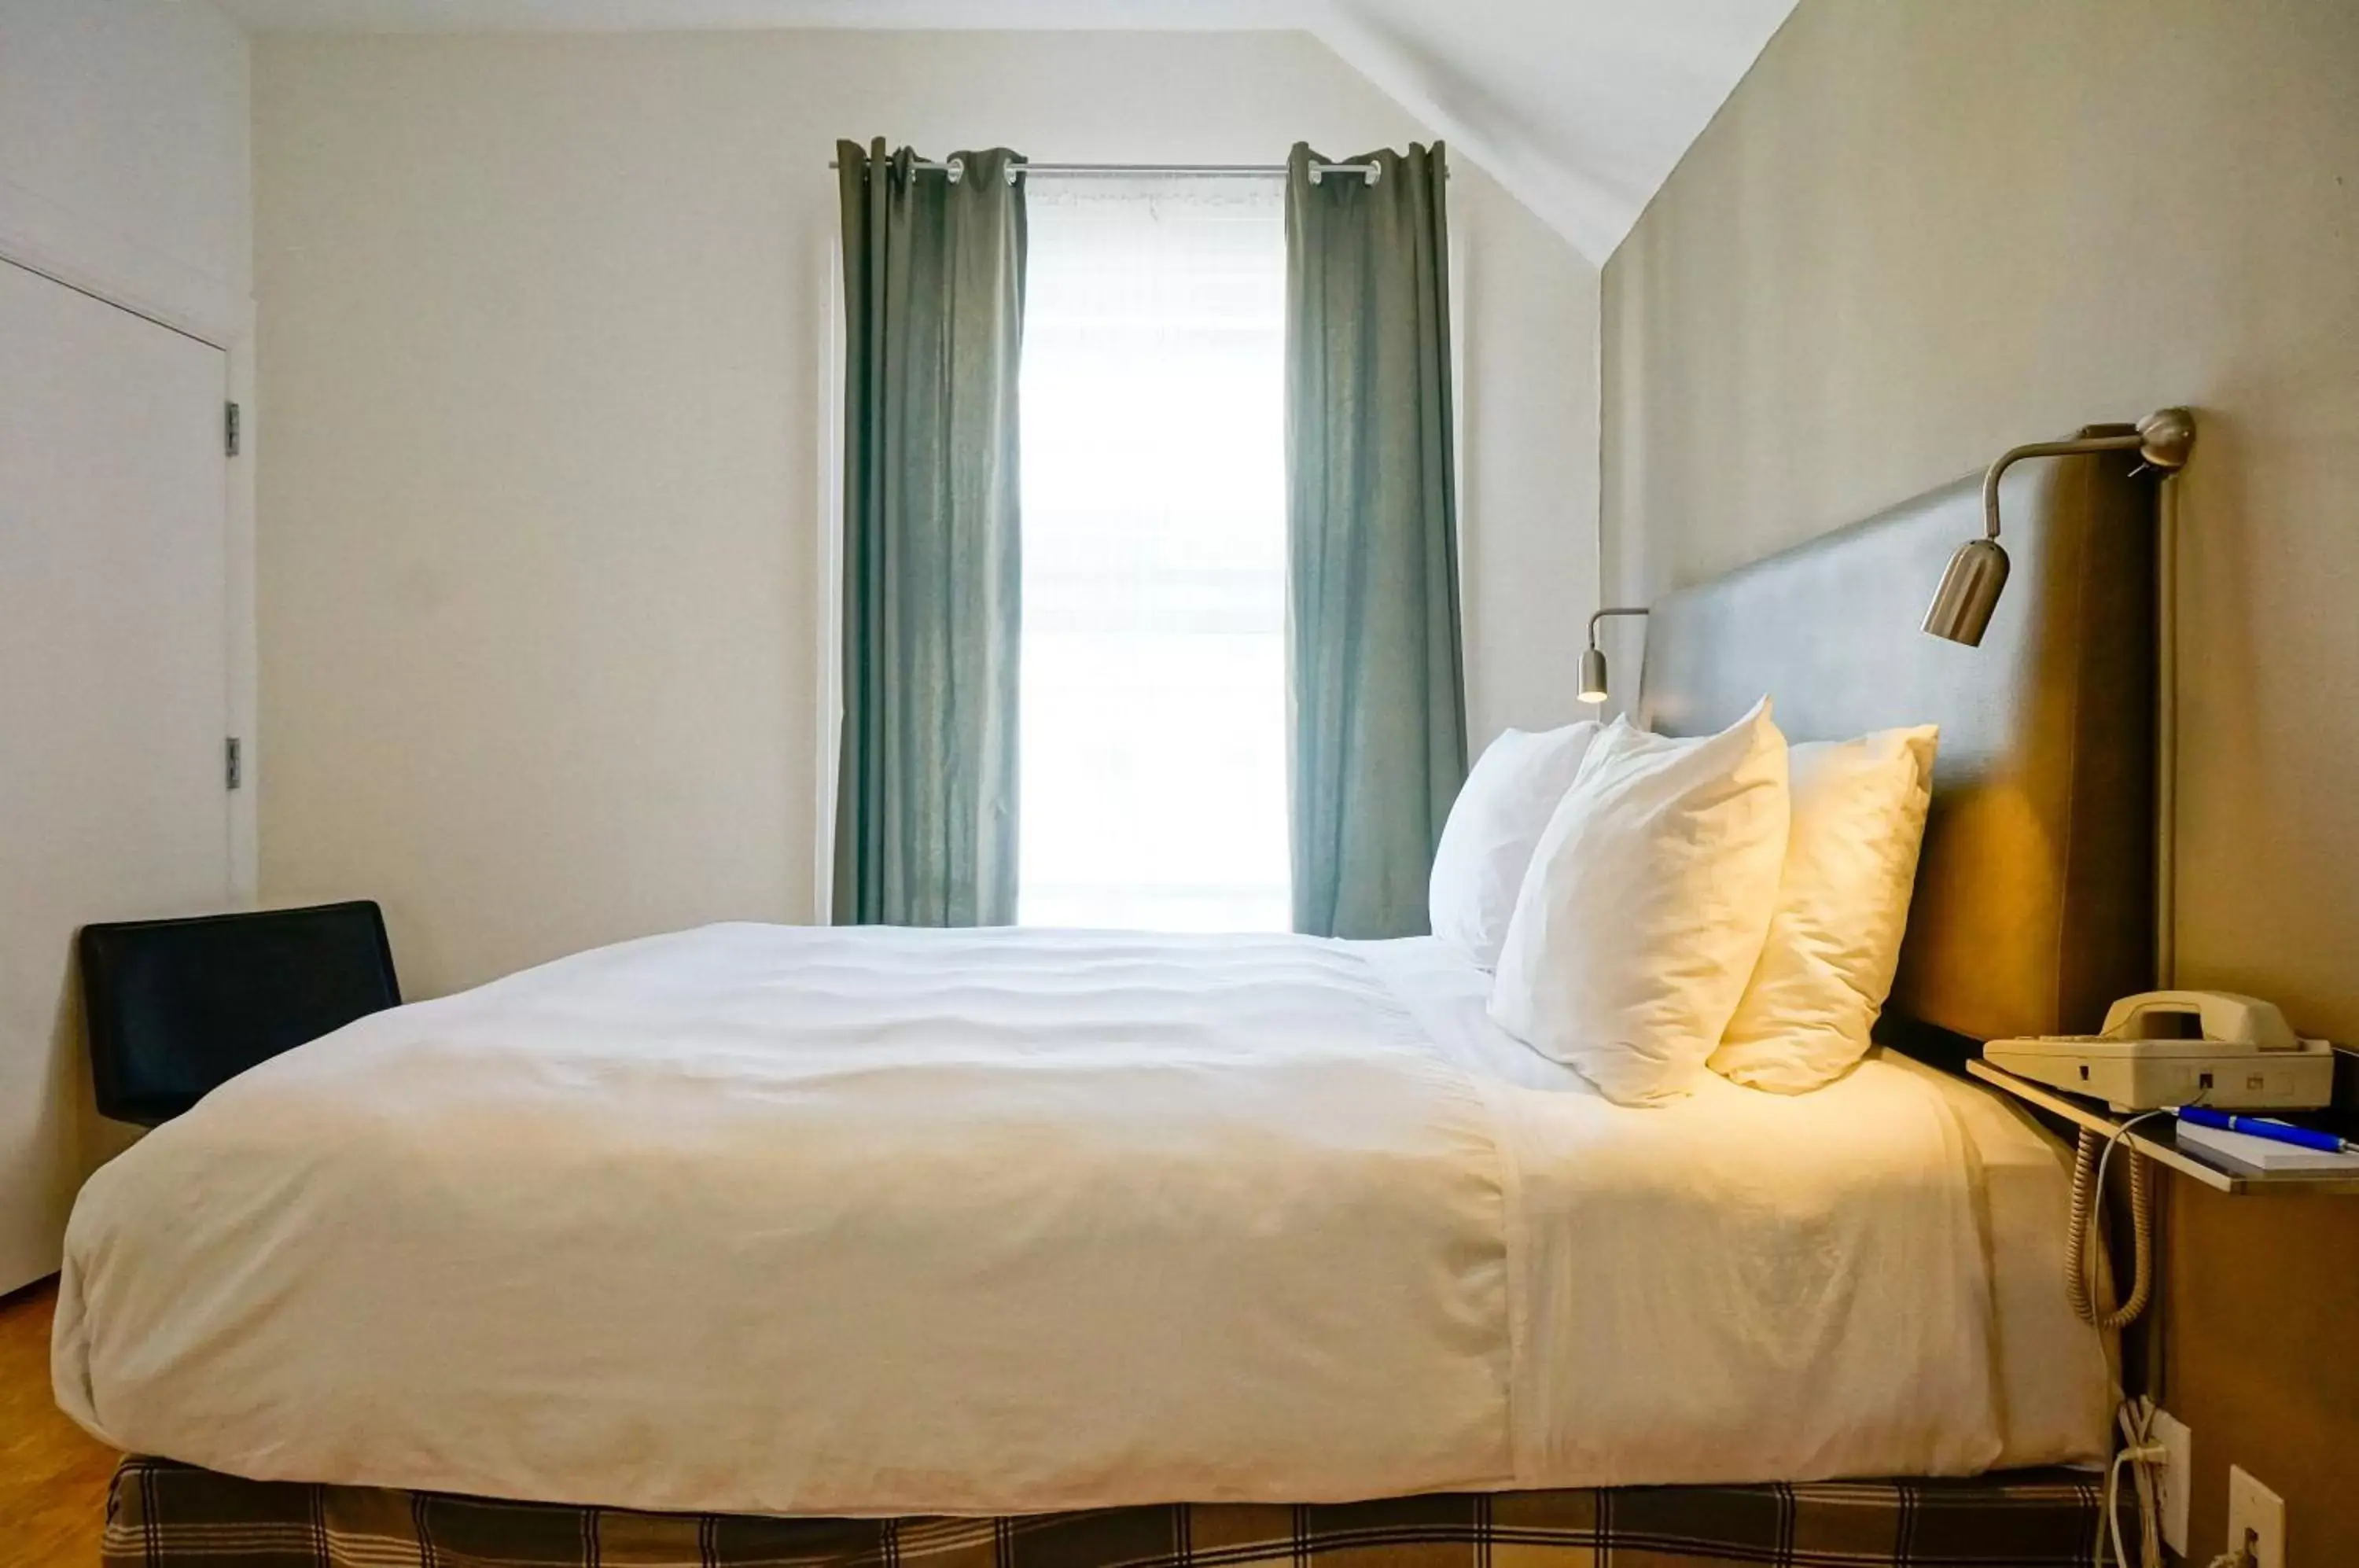 Bed, Room Photo in Herbert Hotel